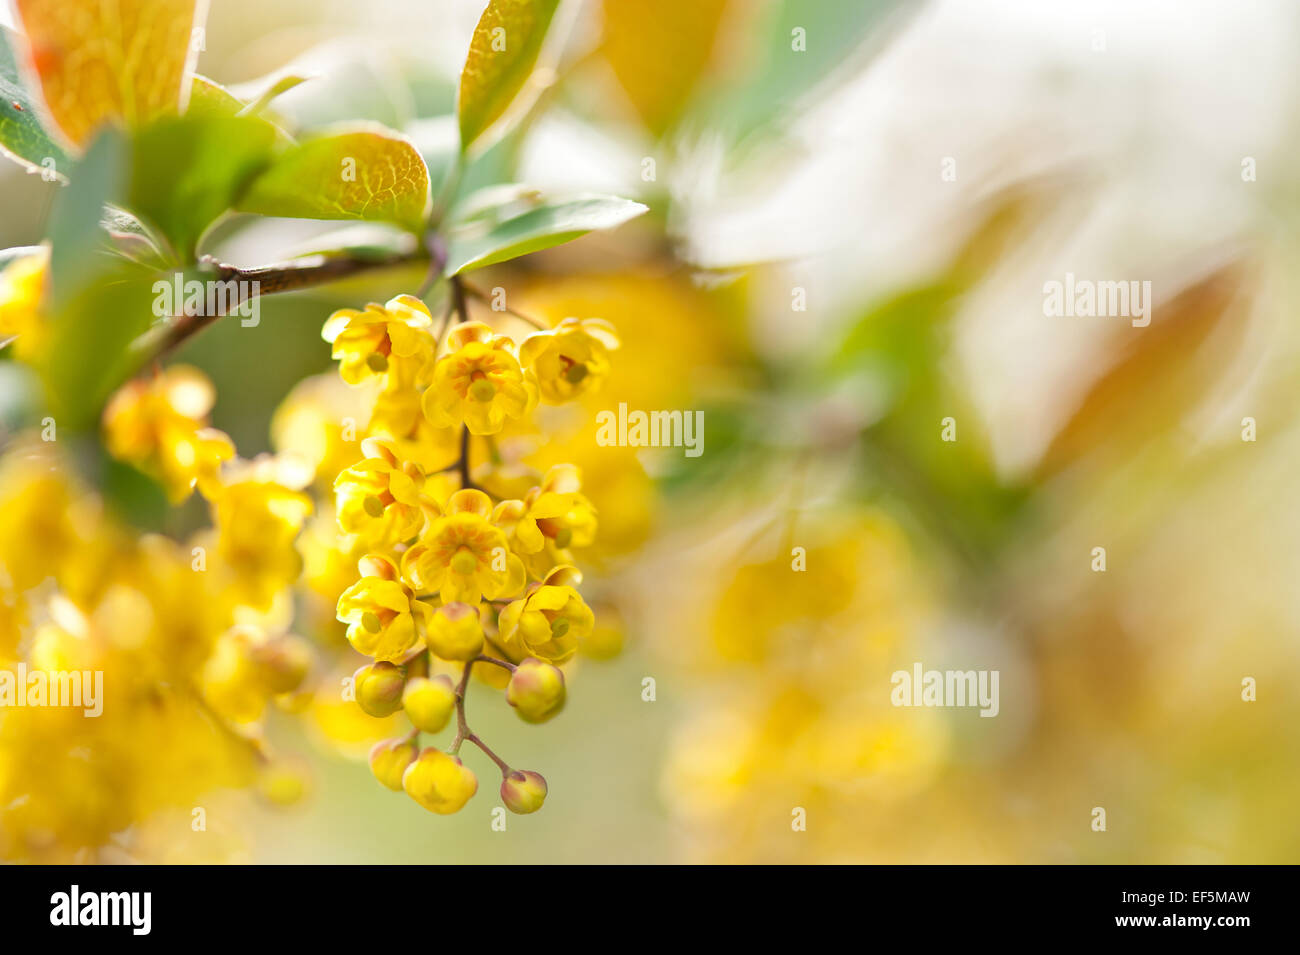 Berberis yellow flowering shrub detail Stock Photo